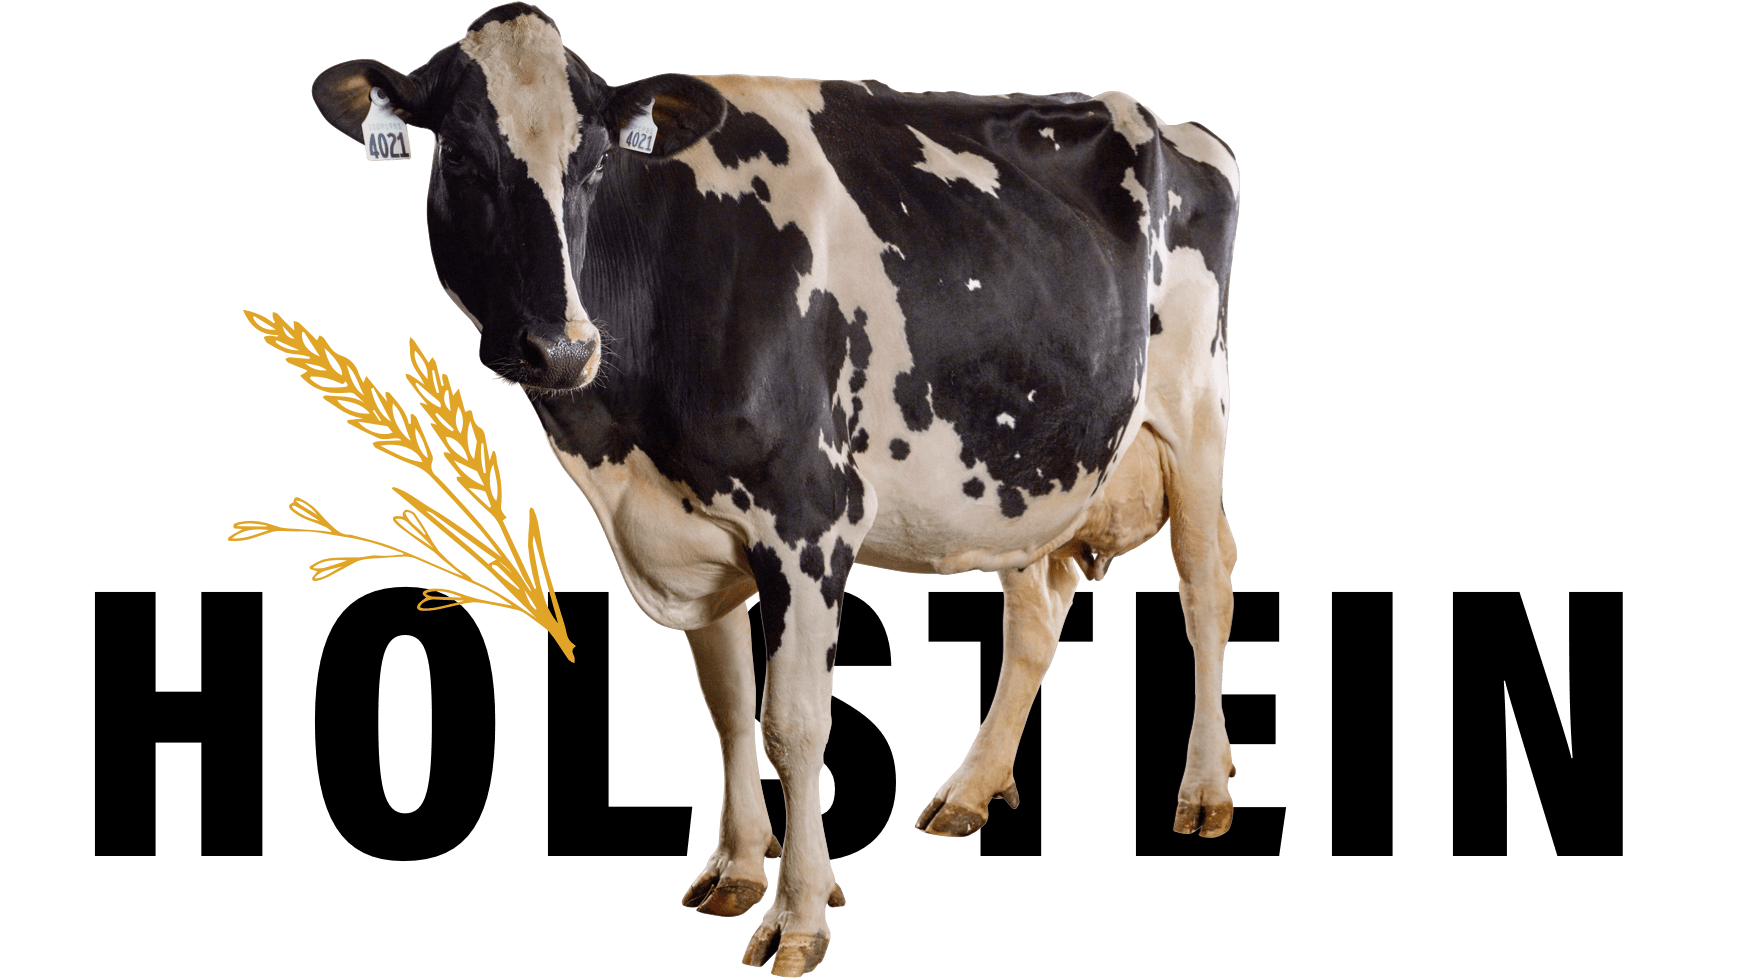 Holstein-16x9@3x